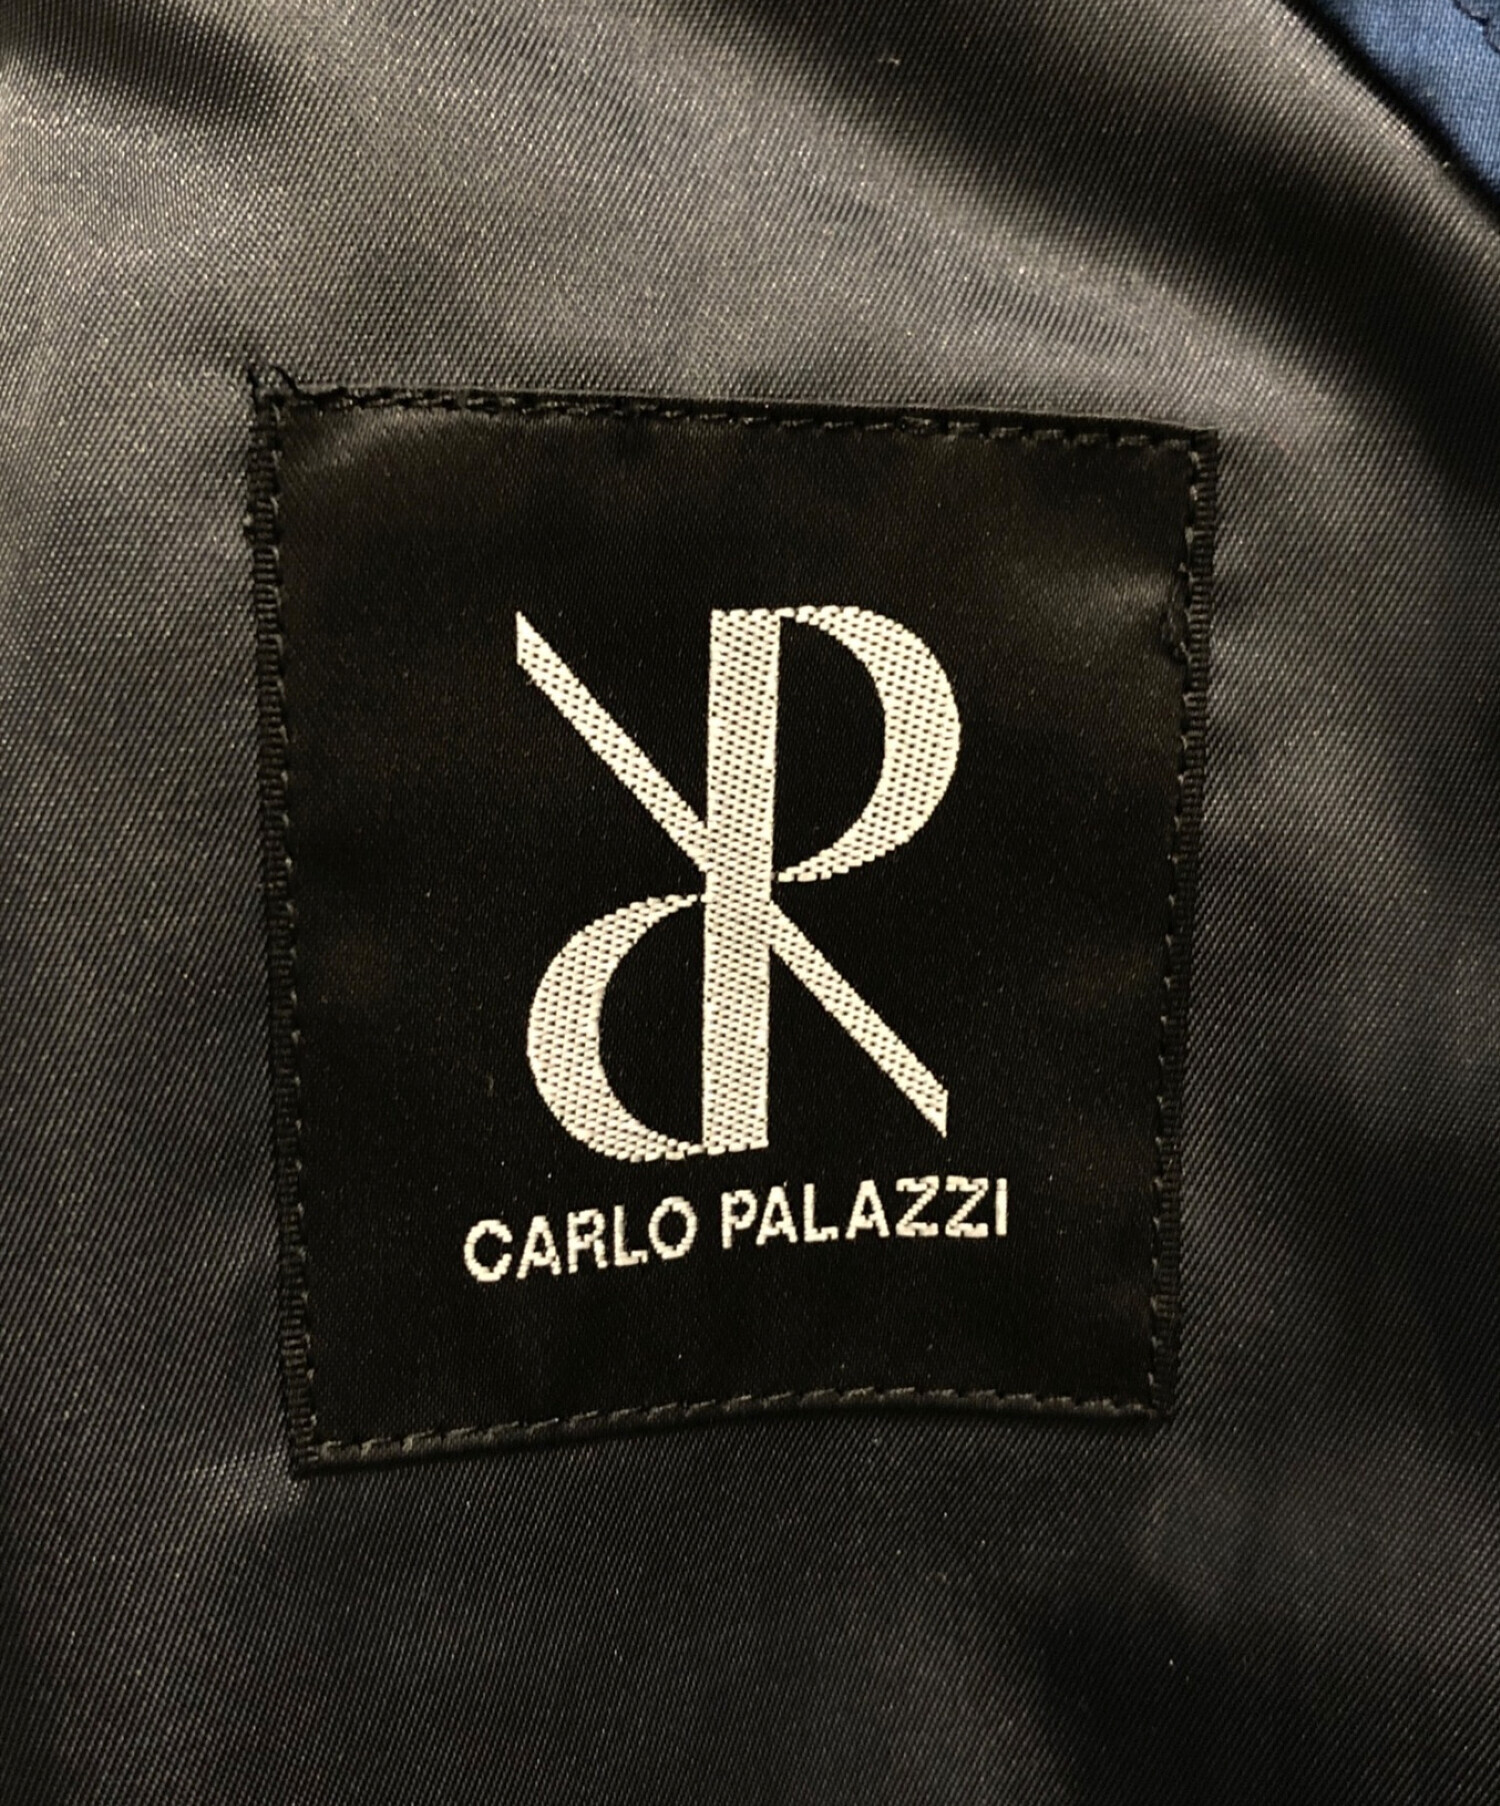 総合ランキング1位受賞 新古品 CARLO PALAZZI カルロパラッツィ